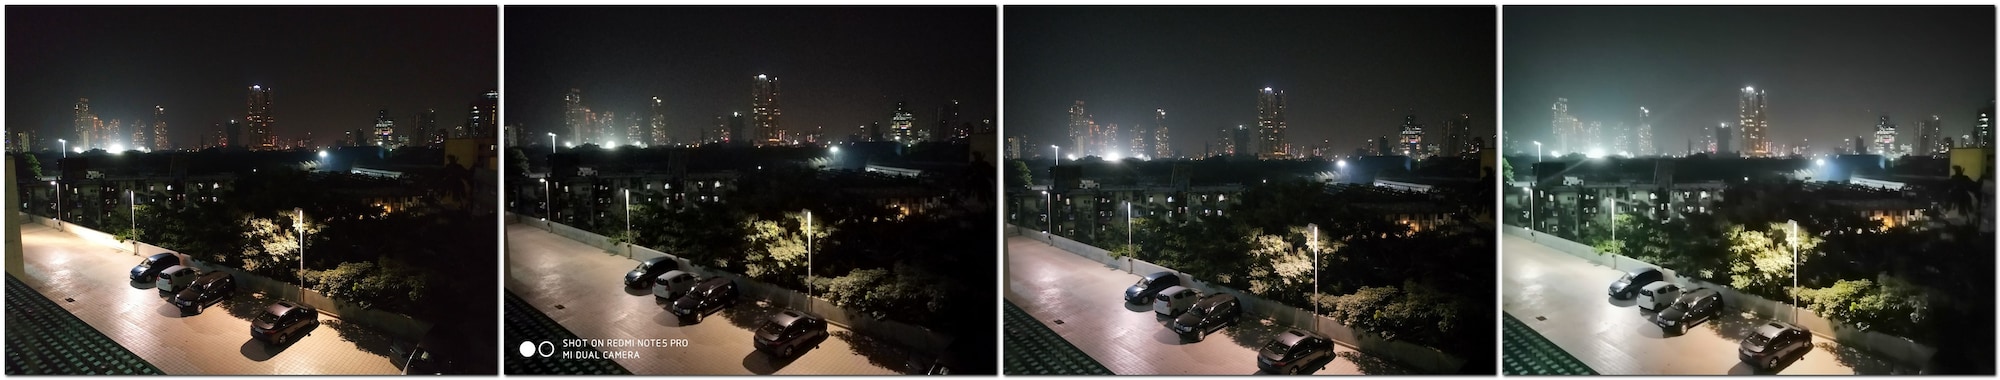 Night landscape comparison (L-R) Redmi Note 6 Pro, Redmi Note 5 Pro, Realme 2 Pro, Honor 8X.